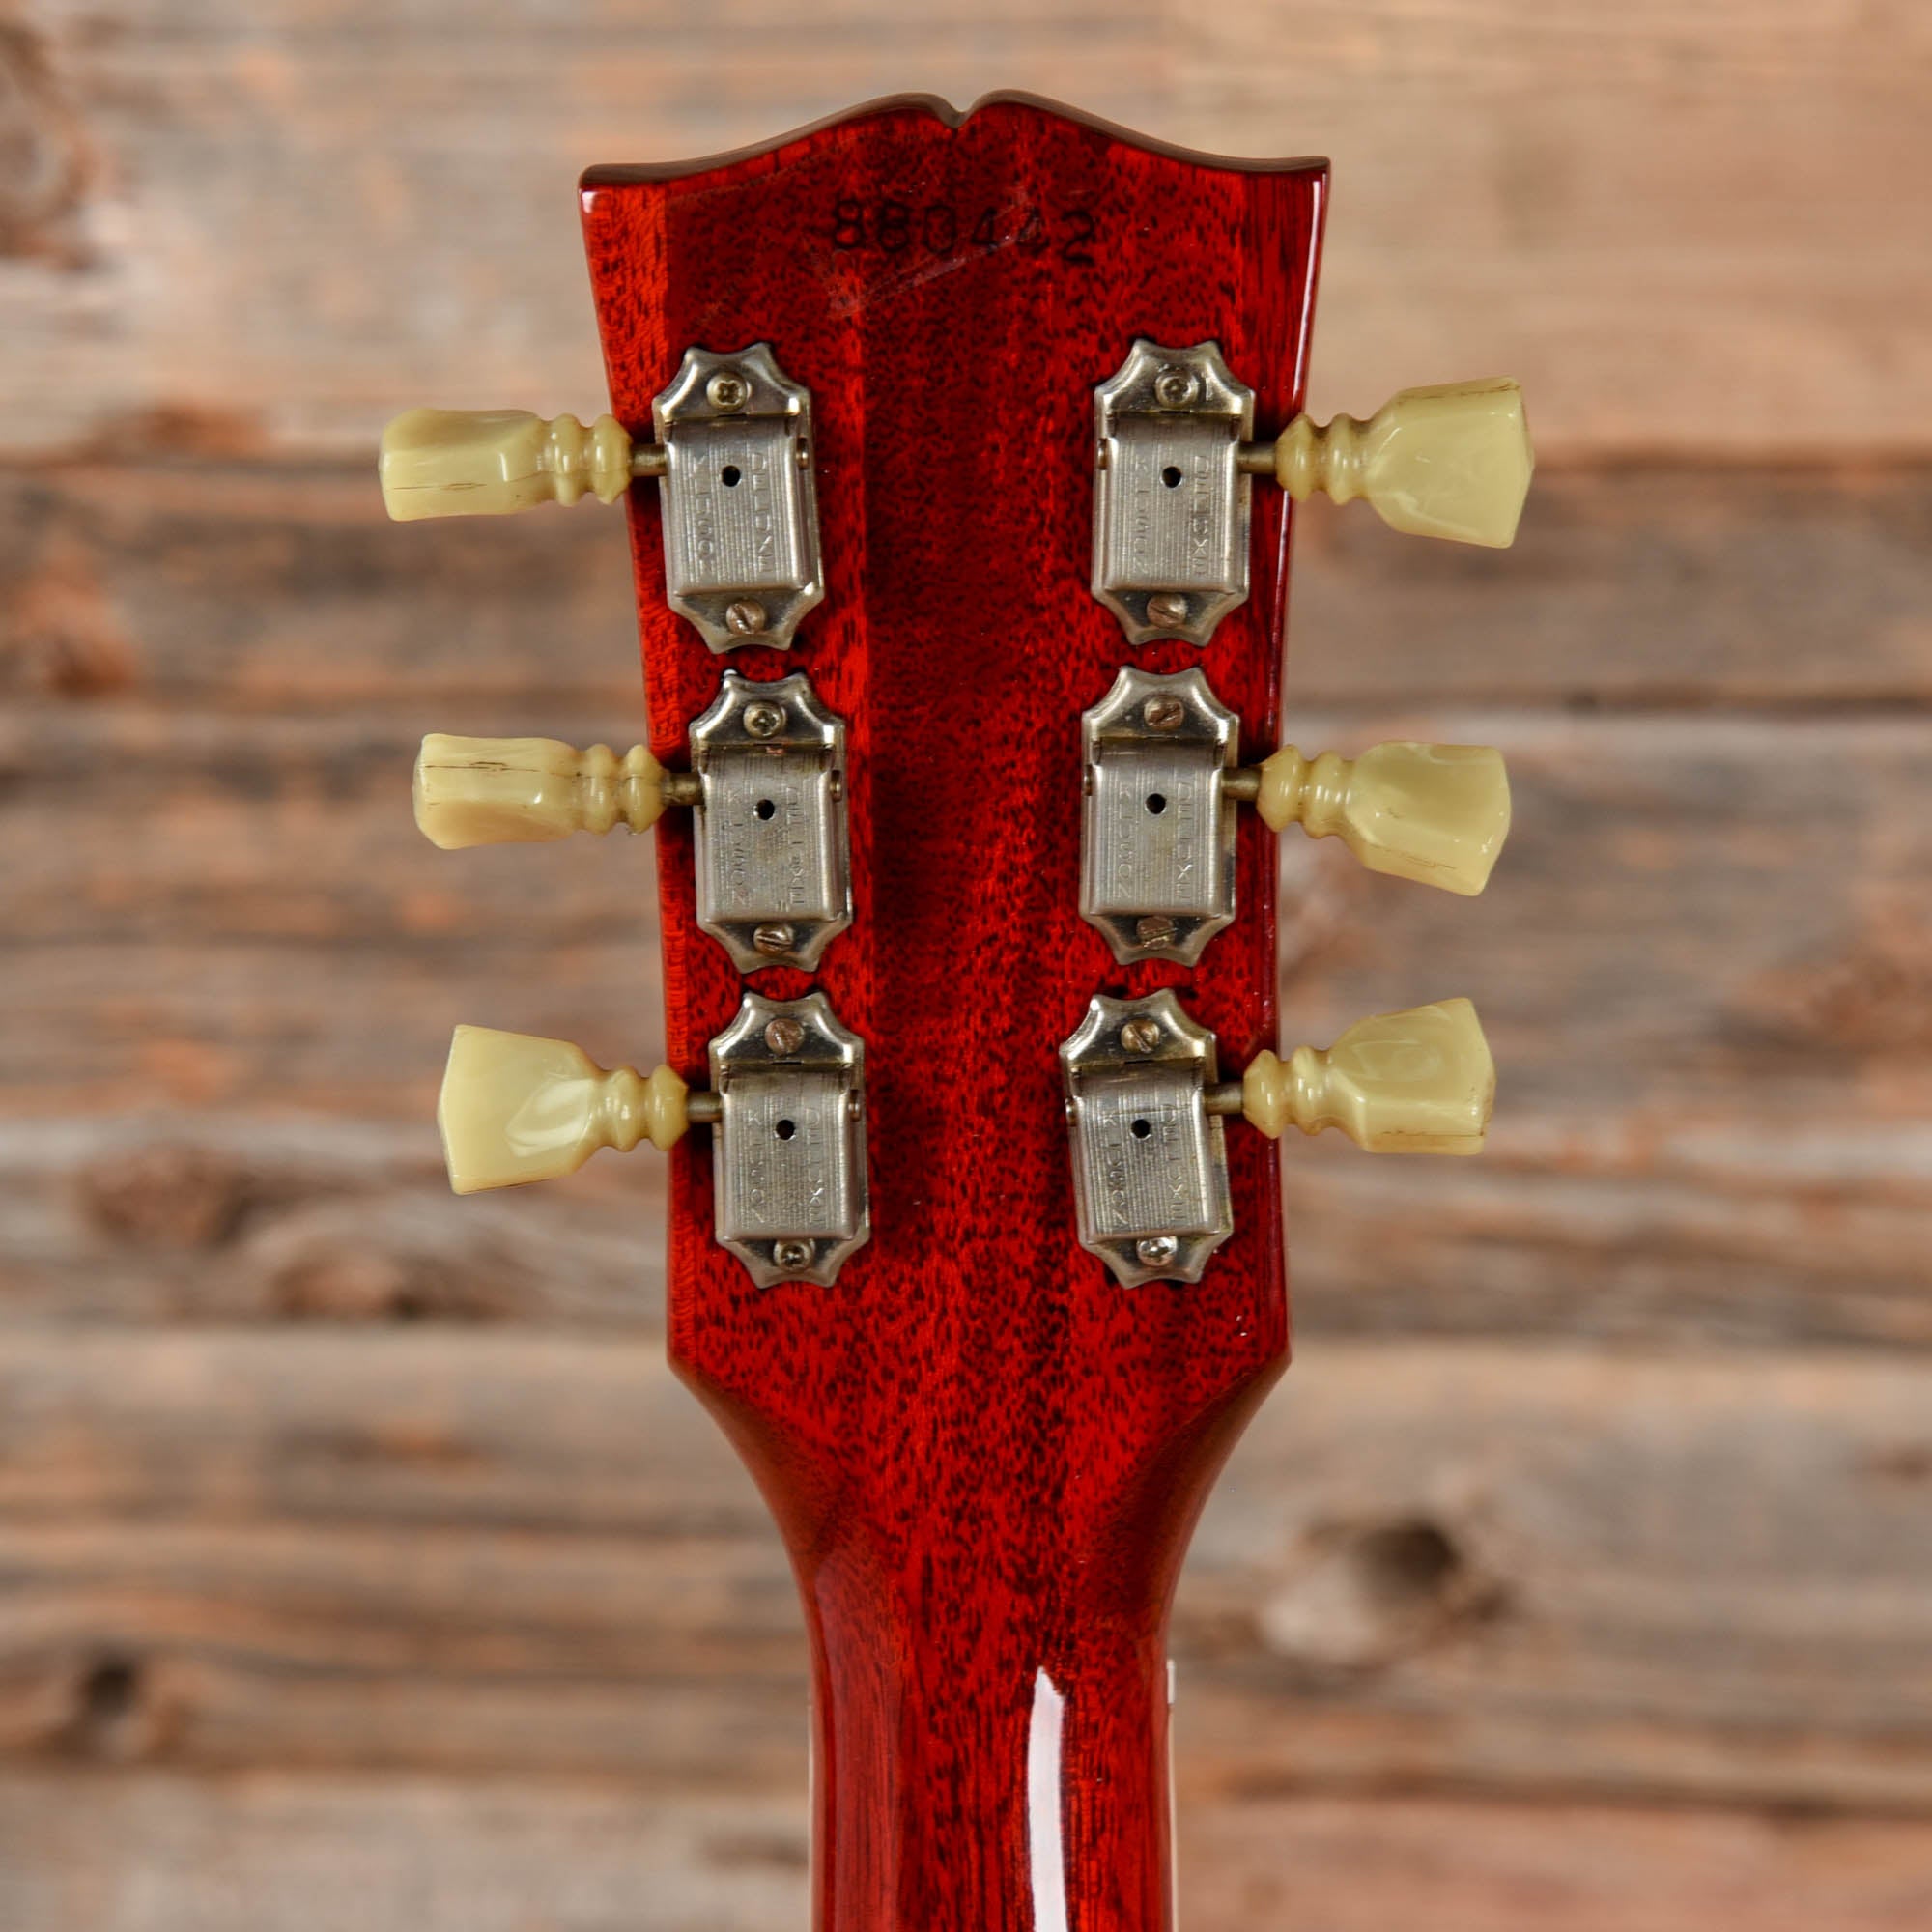 Gibson ES-335 Cherry Refin 1969